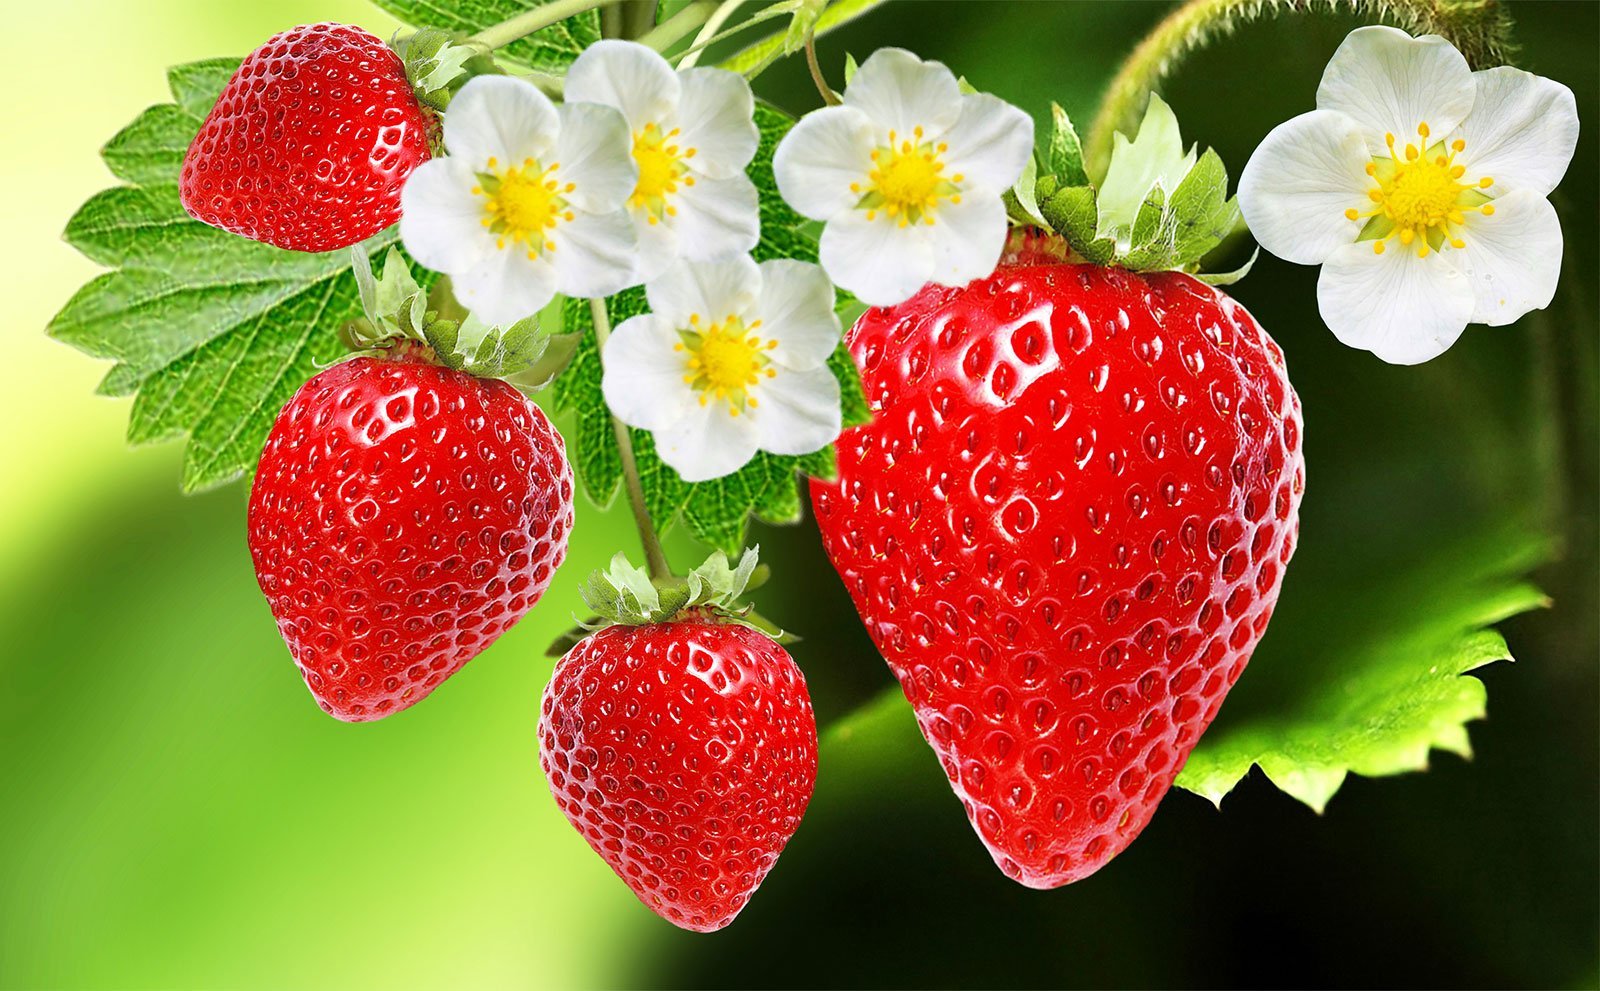 Strawberrynet - Atendimento diferenciado que faz a diferença!